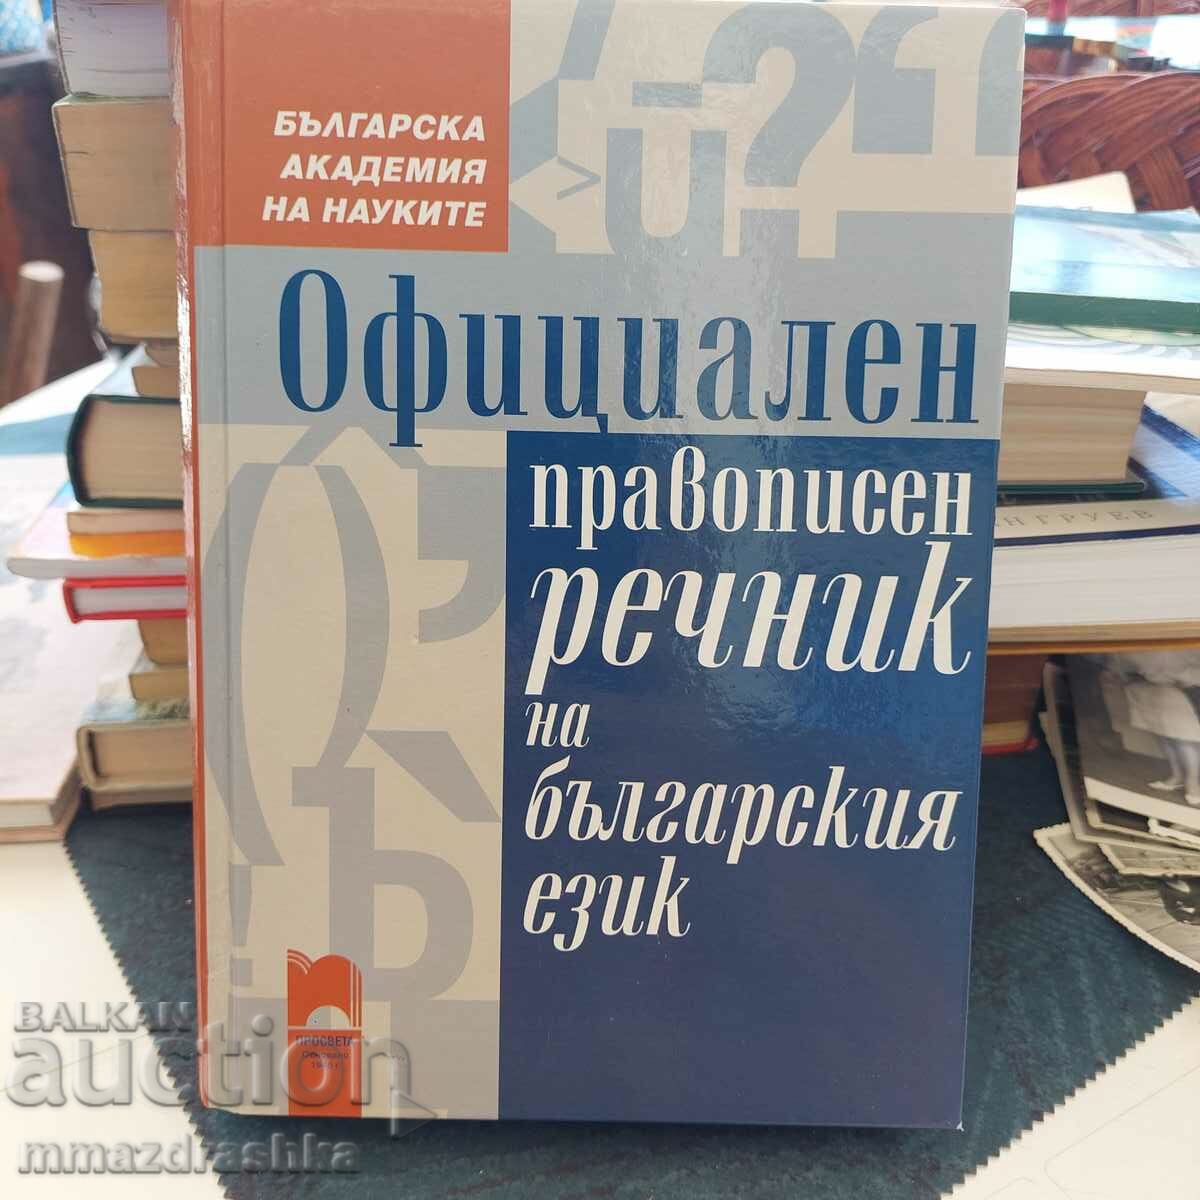 Επίσημο ορθογραφικό λεξικό της βουλγαρικής γλώσσας